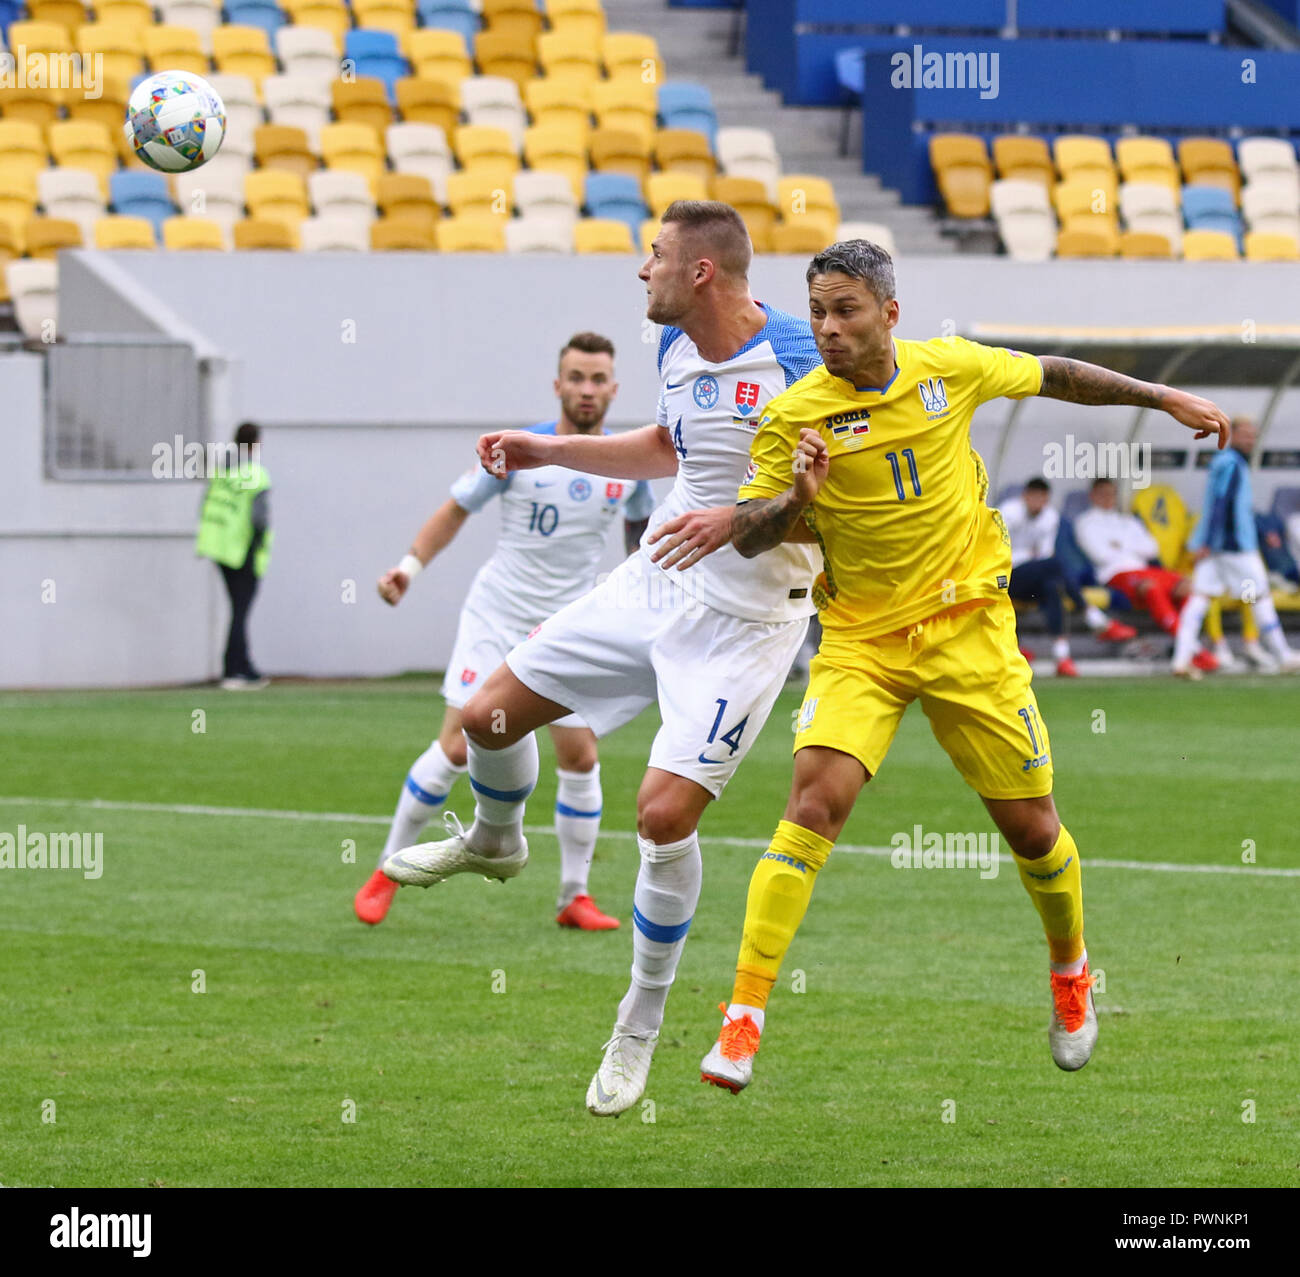 LVIV, Ucraina - 9 Settembre 2018: Milano Skriniar della Slovacchia (L) combatte per una sfera con Marlos dell'Ucraina durante le loro nazioni UEFA League a Ar Foto Stock